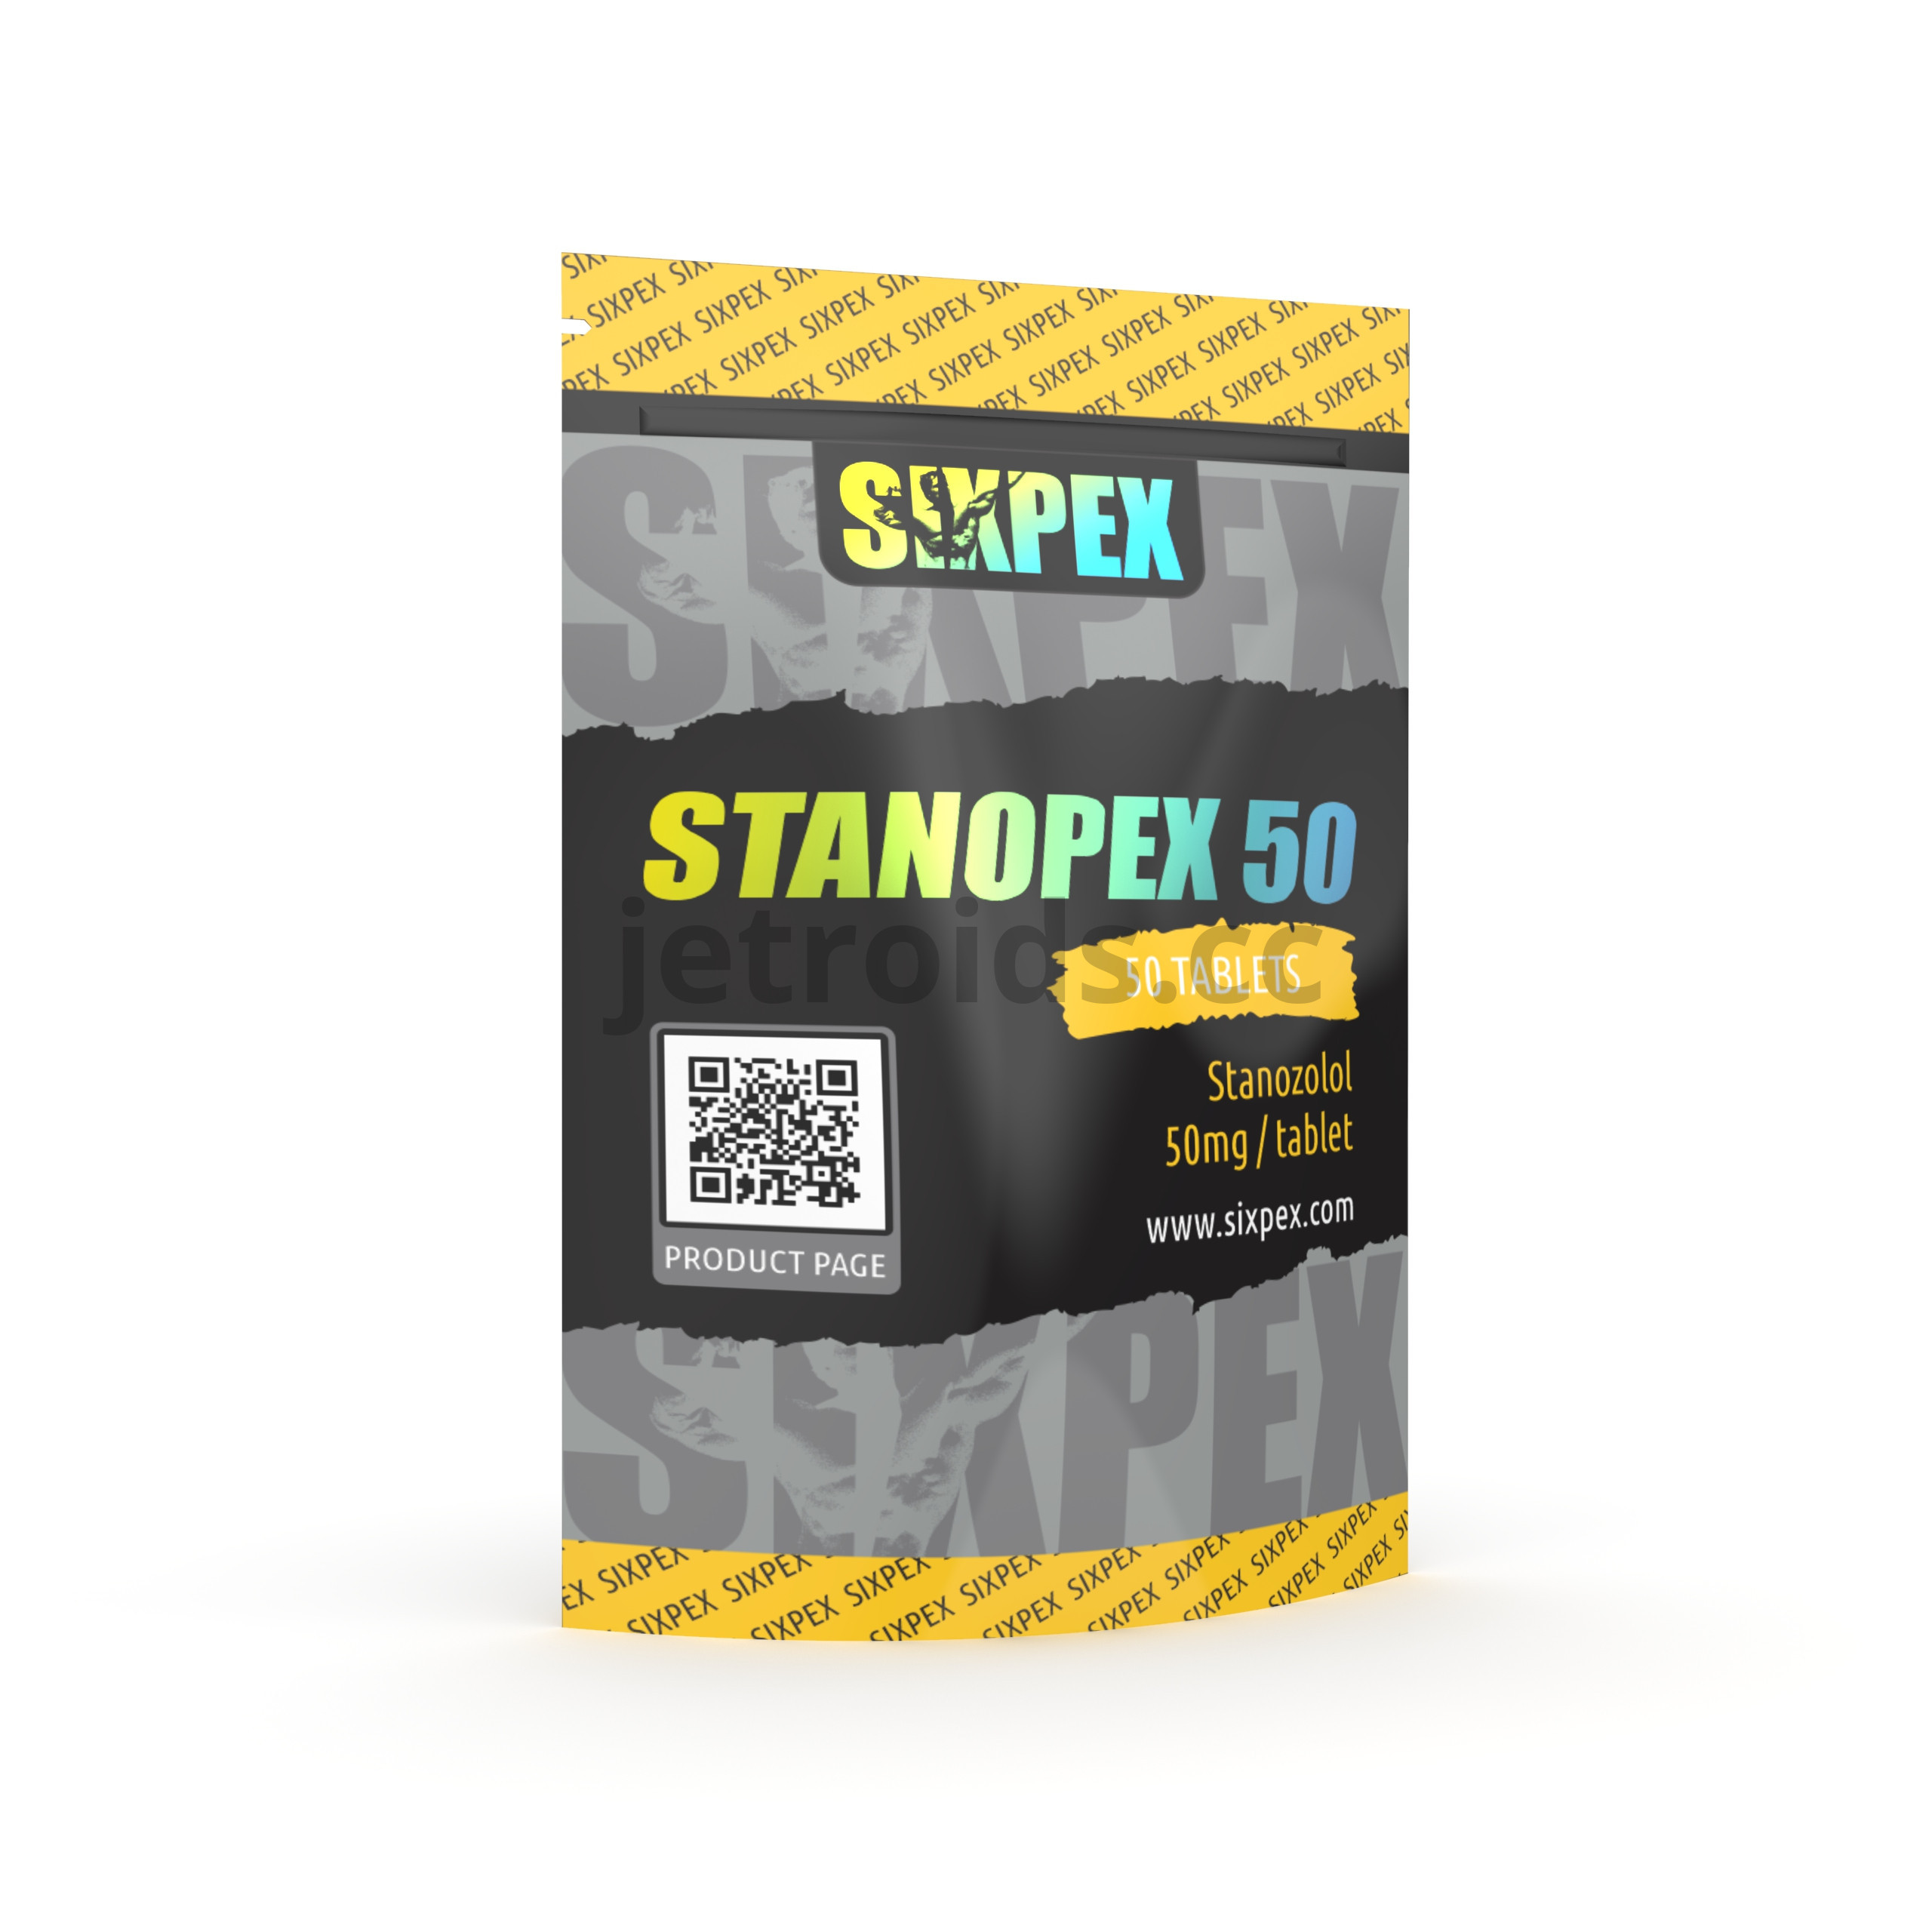 Sixpex Stanopex 50 Product Info